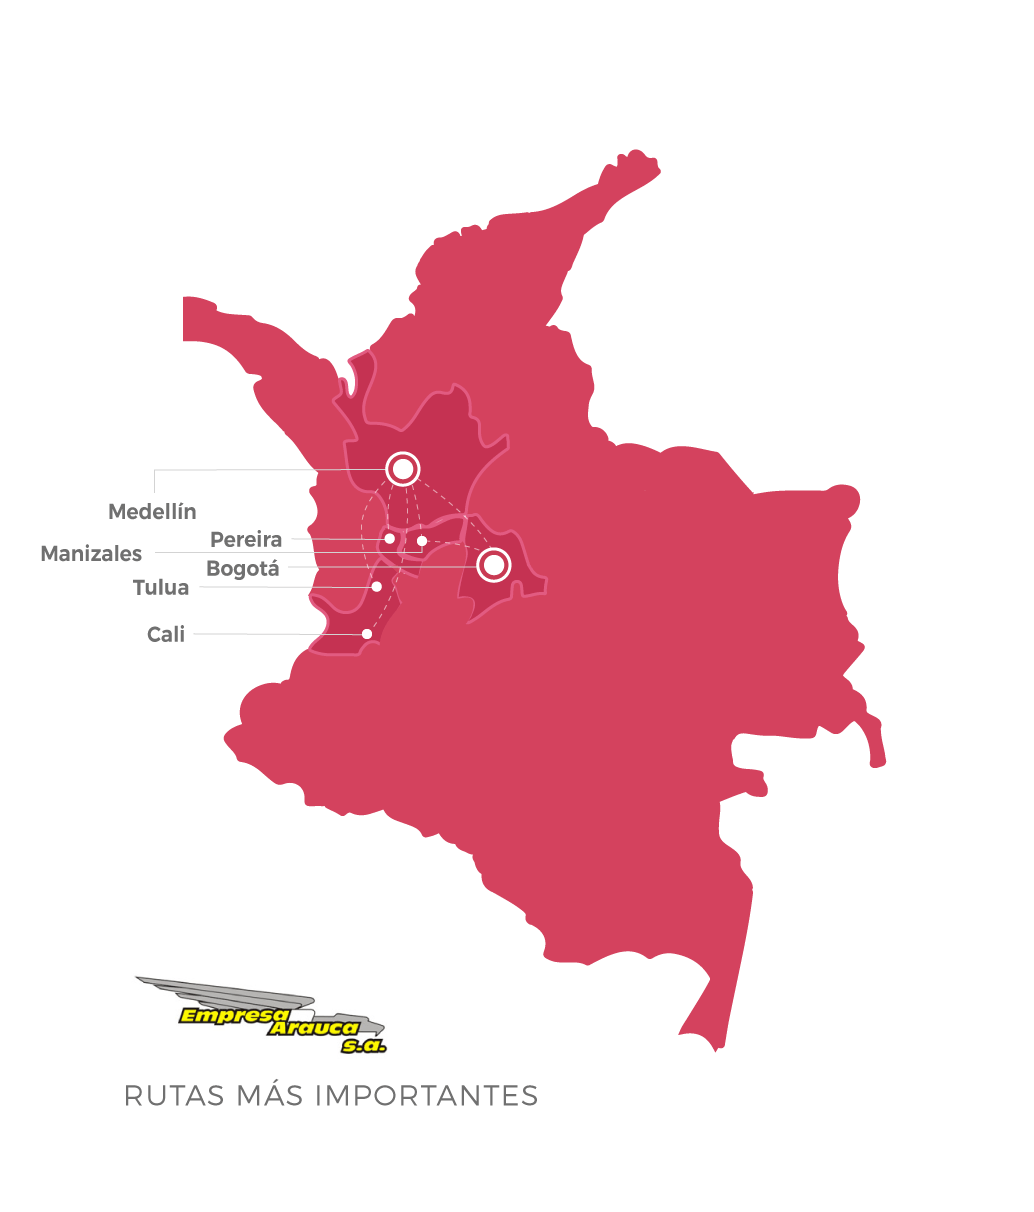 Empresa Arauca destinos más importantes